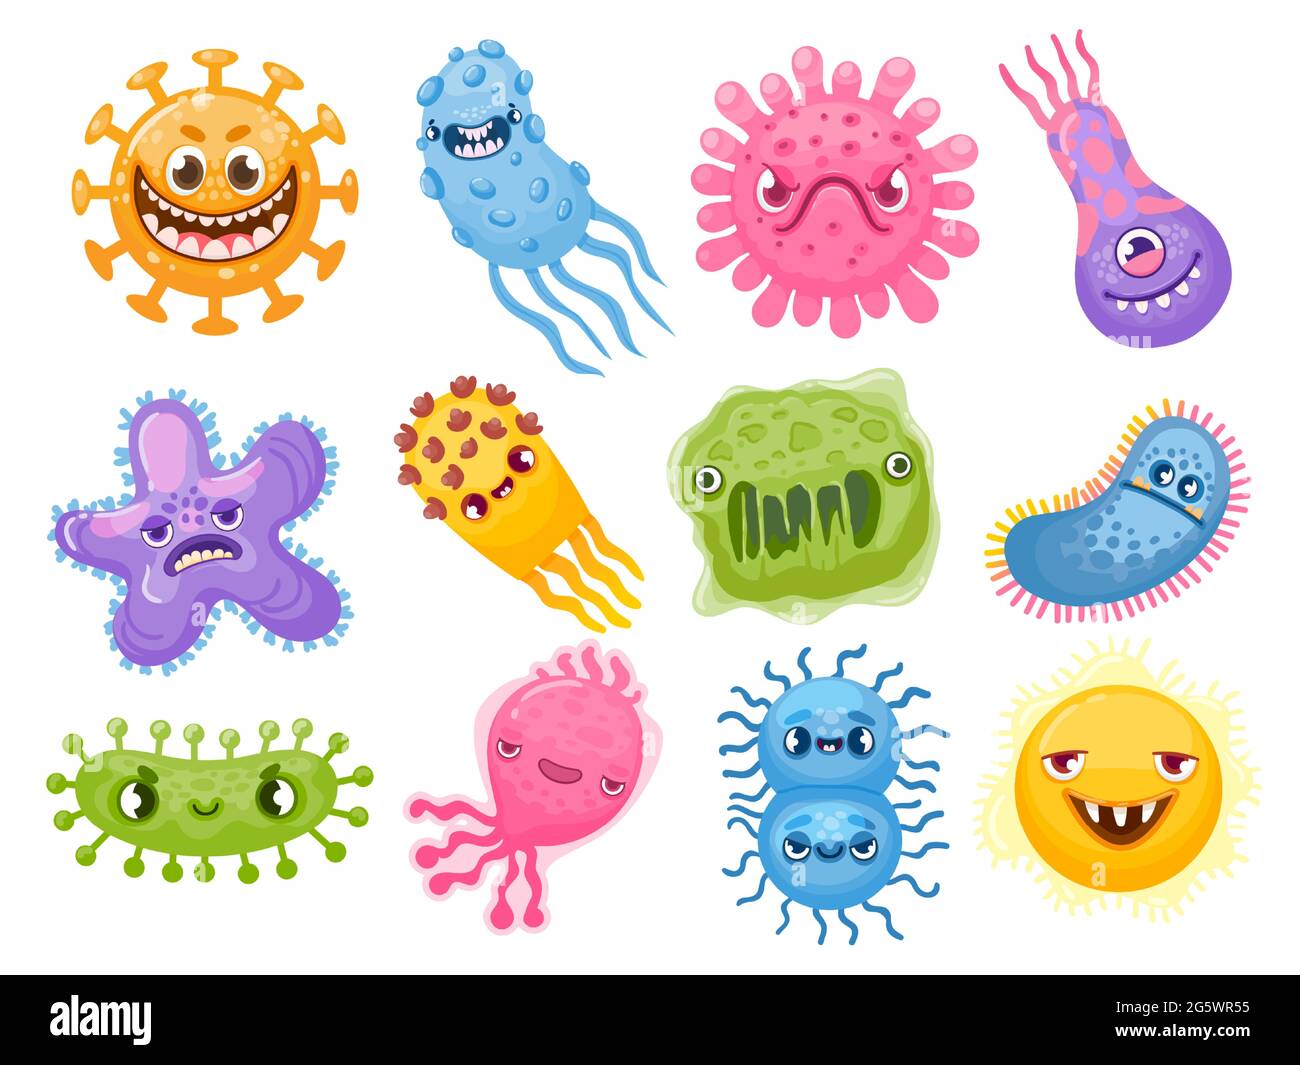 Cartoon-Viren. Keim und Bakterien mit bösen Gesichtern. Schlechter Erreger-Mikrobencharakter. Coronavirus und Grippe-Krankheit Bakterium Monster Vektor-Set Stock Vektor